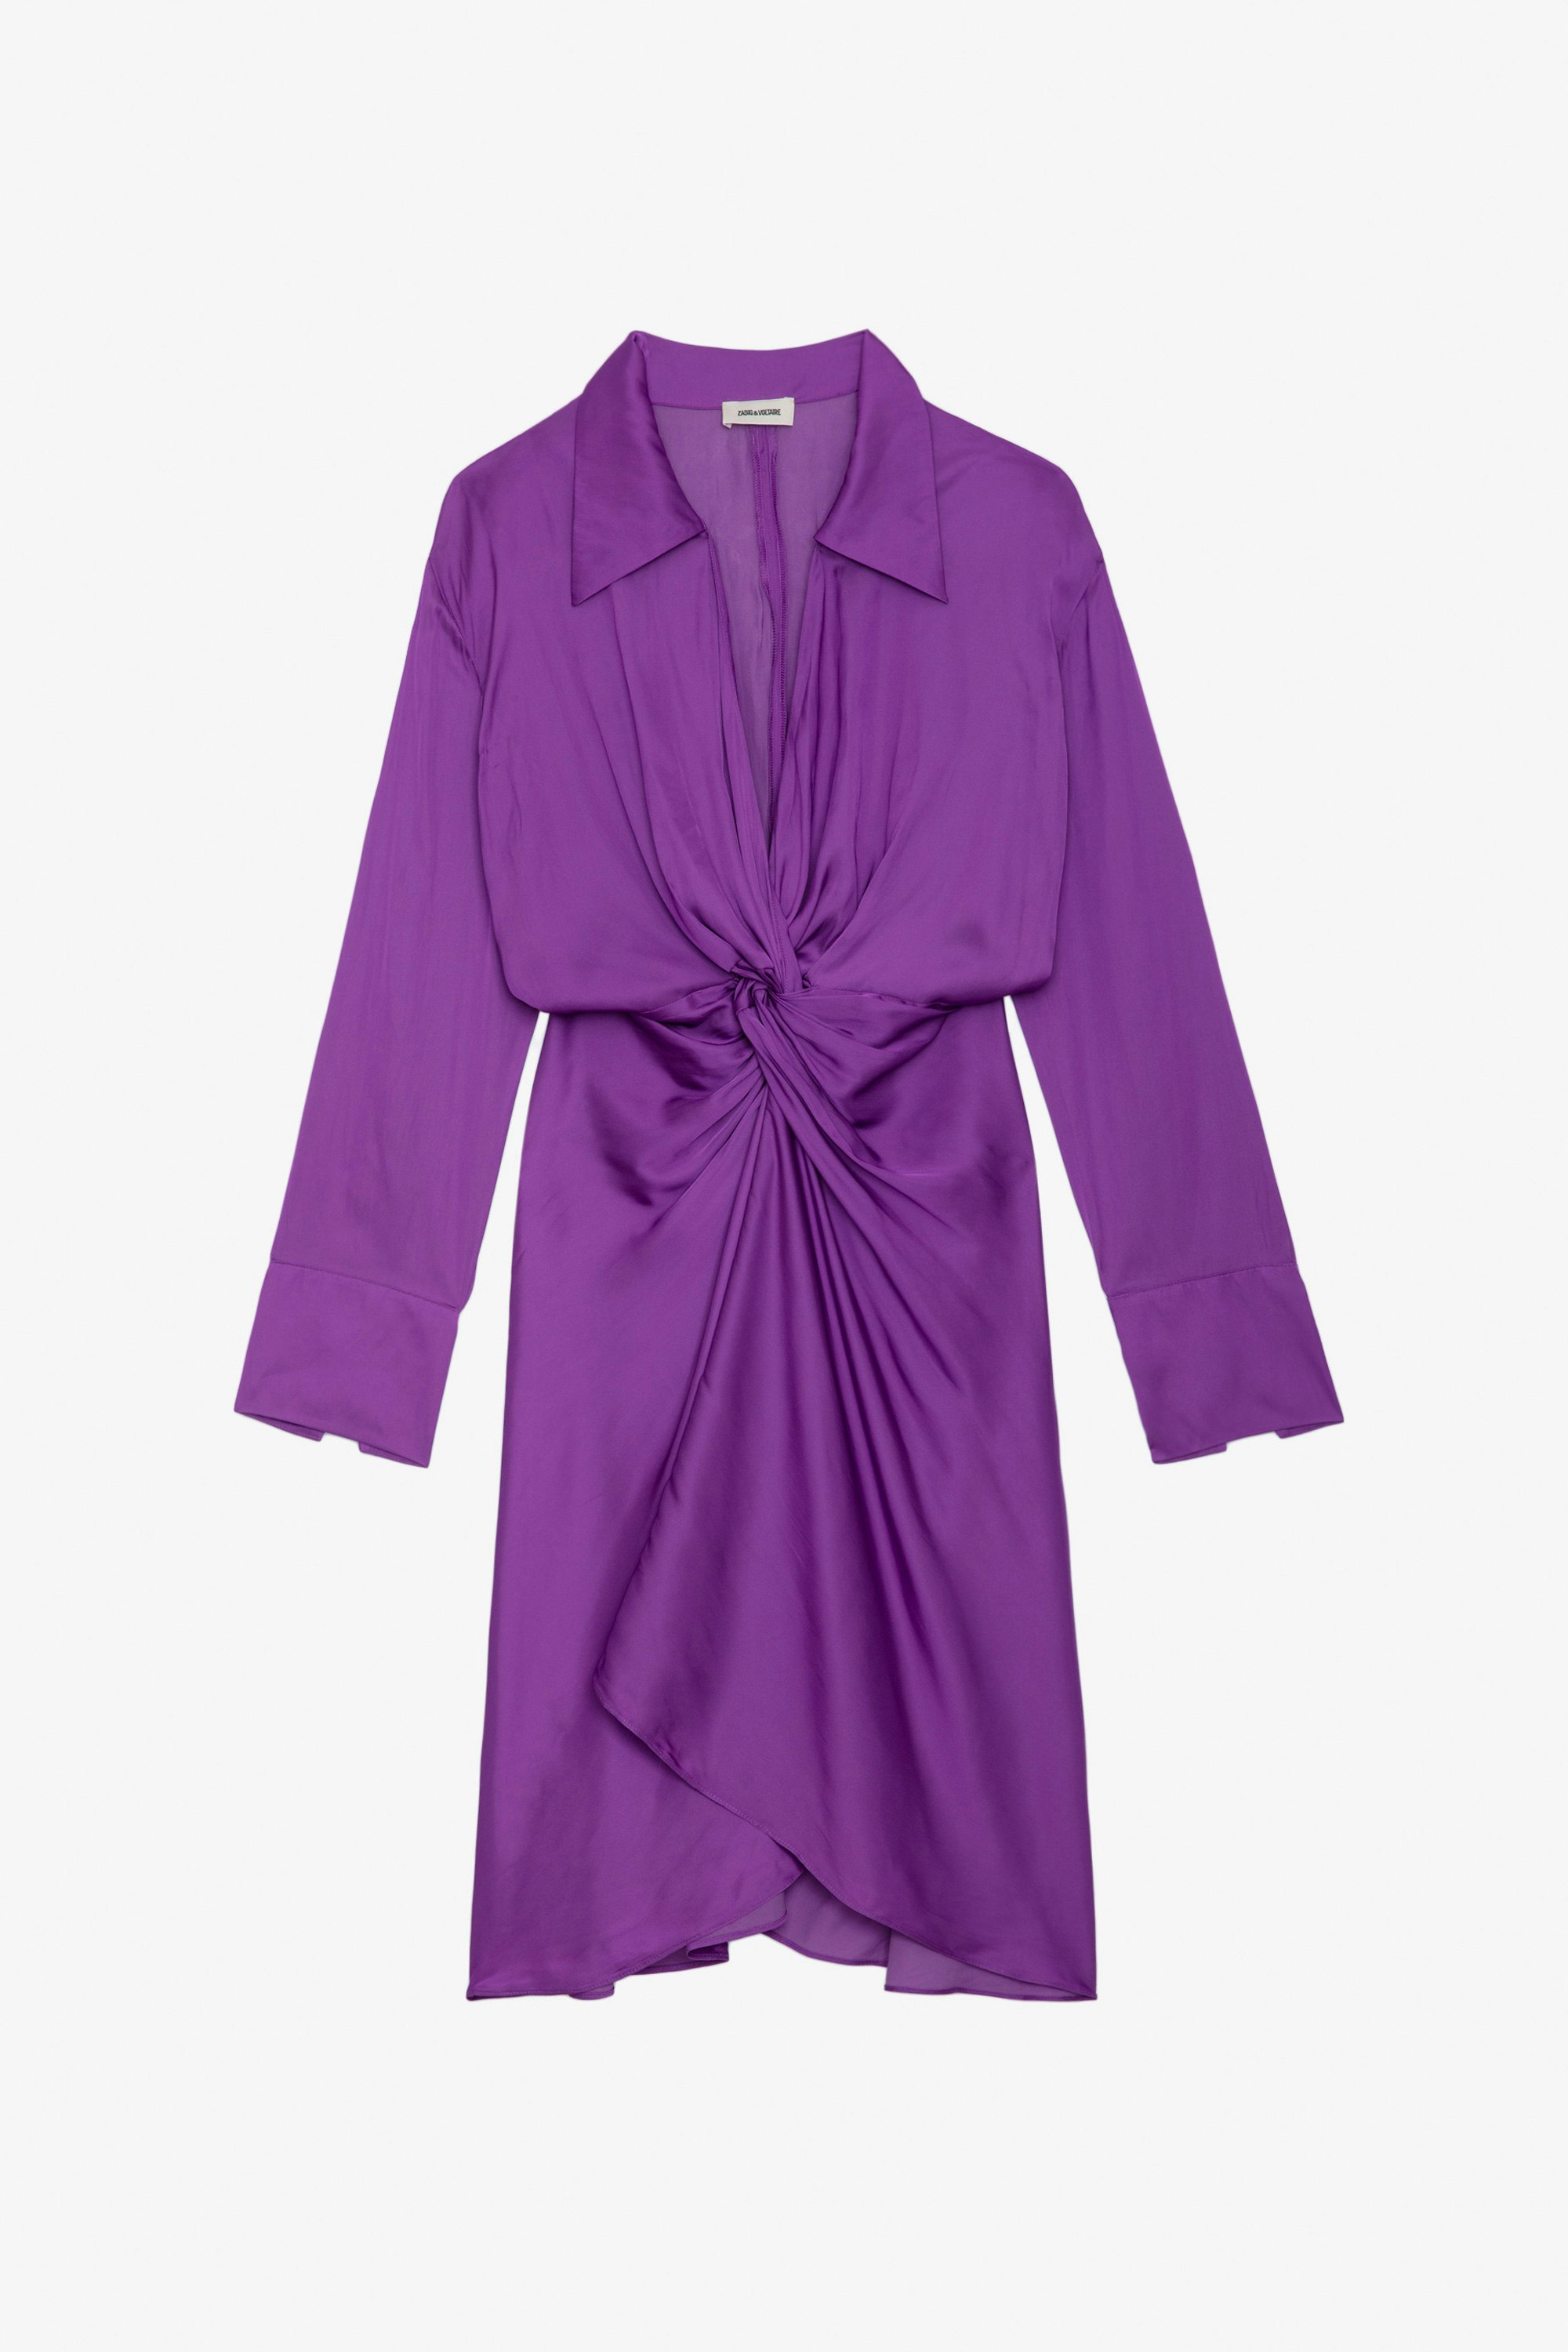 Robe Rozo Satin - Robe mi-longue en satin violet à manches longues et drapée à la taille.